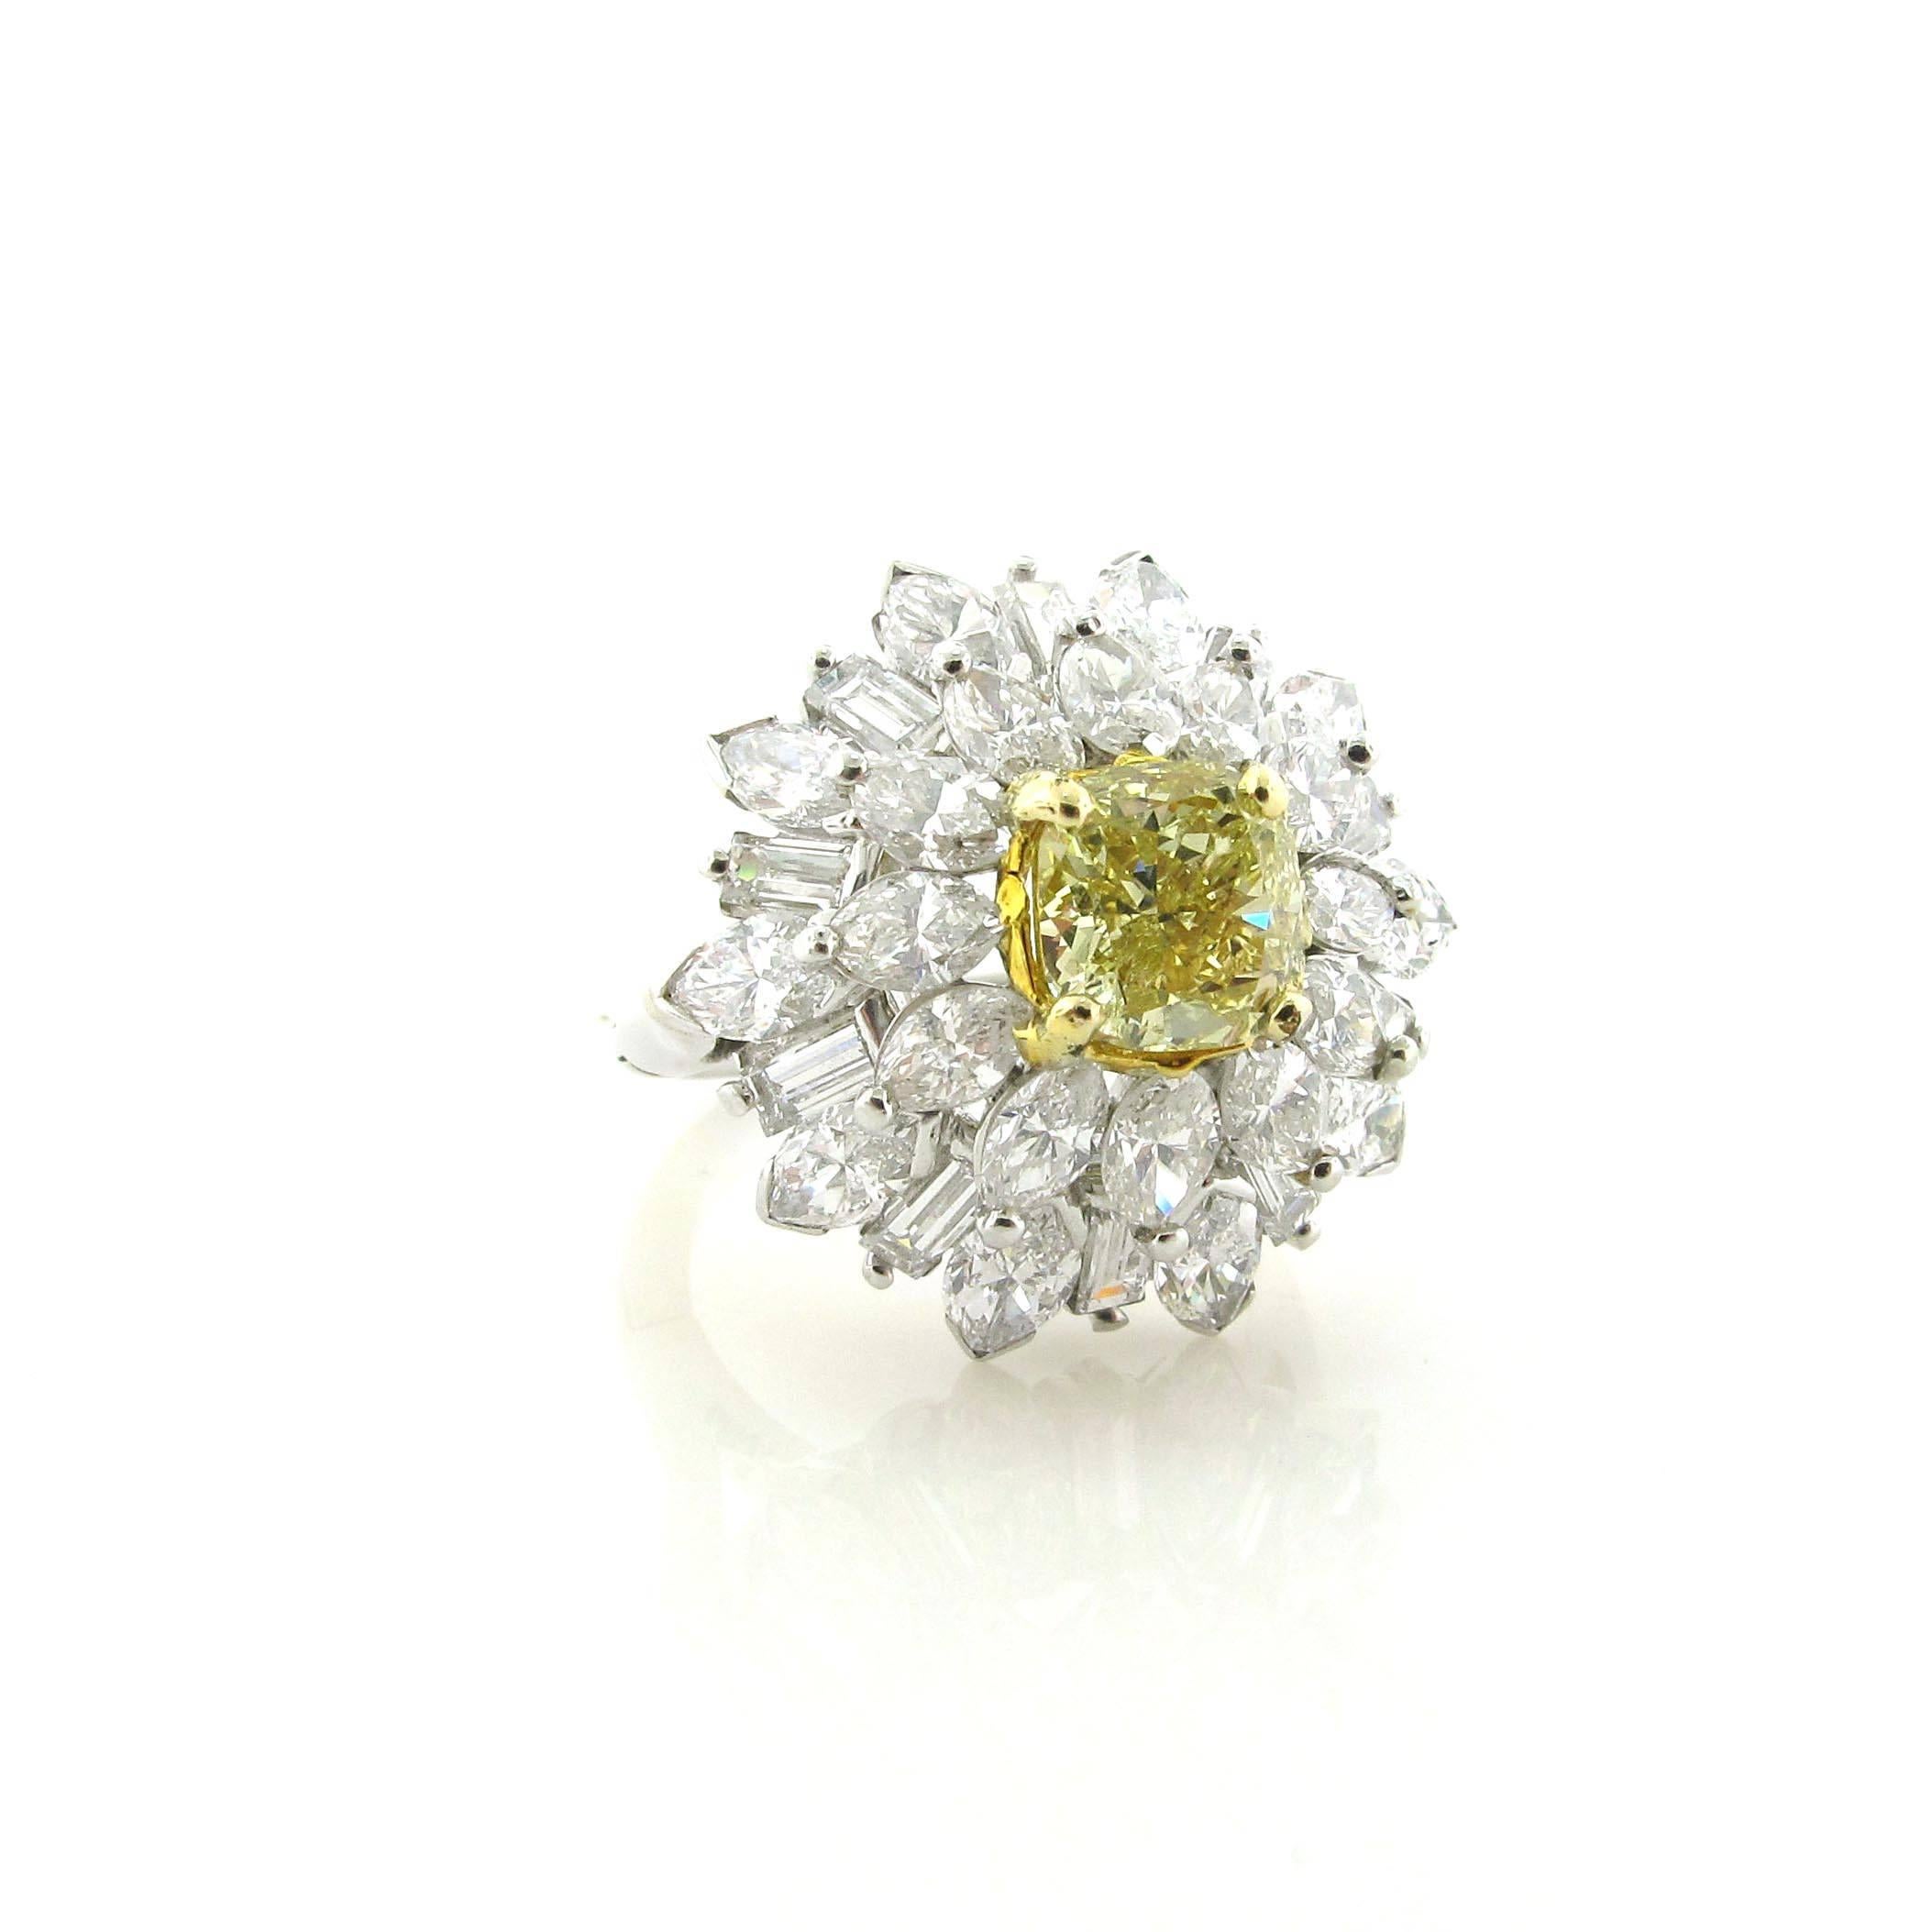 Wunderschöner 1,64 Karat Fancy Light Yellow Cushion Diamant mit GIA Zertifikat. Der gelbe Diamant in der Mitte ist von etwa 6 Karat weißen Diamanten im Fancy-Schliff umgeben. Dieser Ring ist sowohl für den Alltag als auch für besondere Anlässe